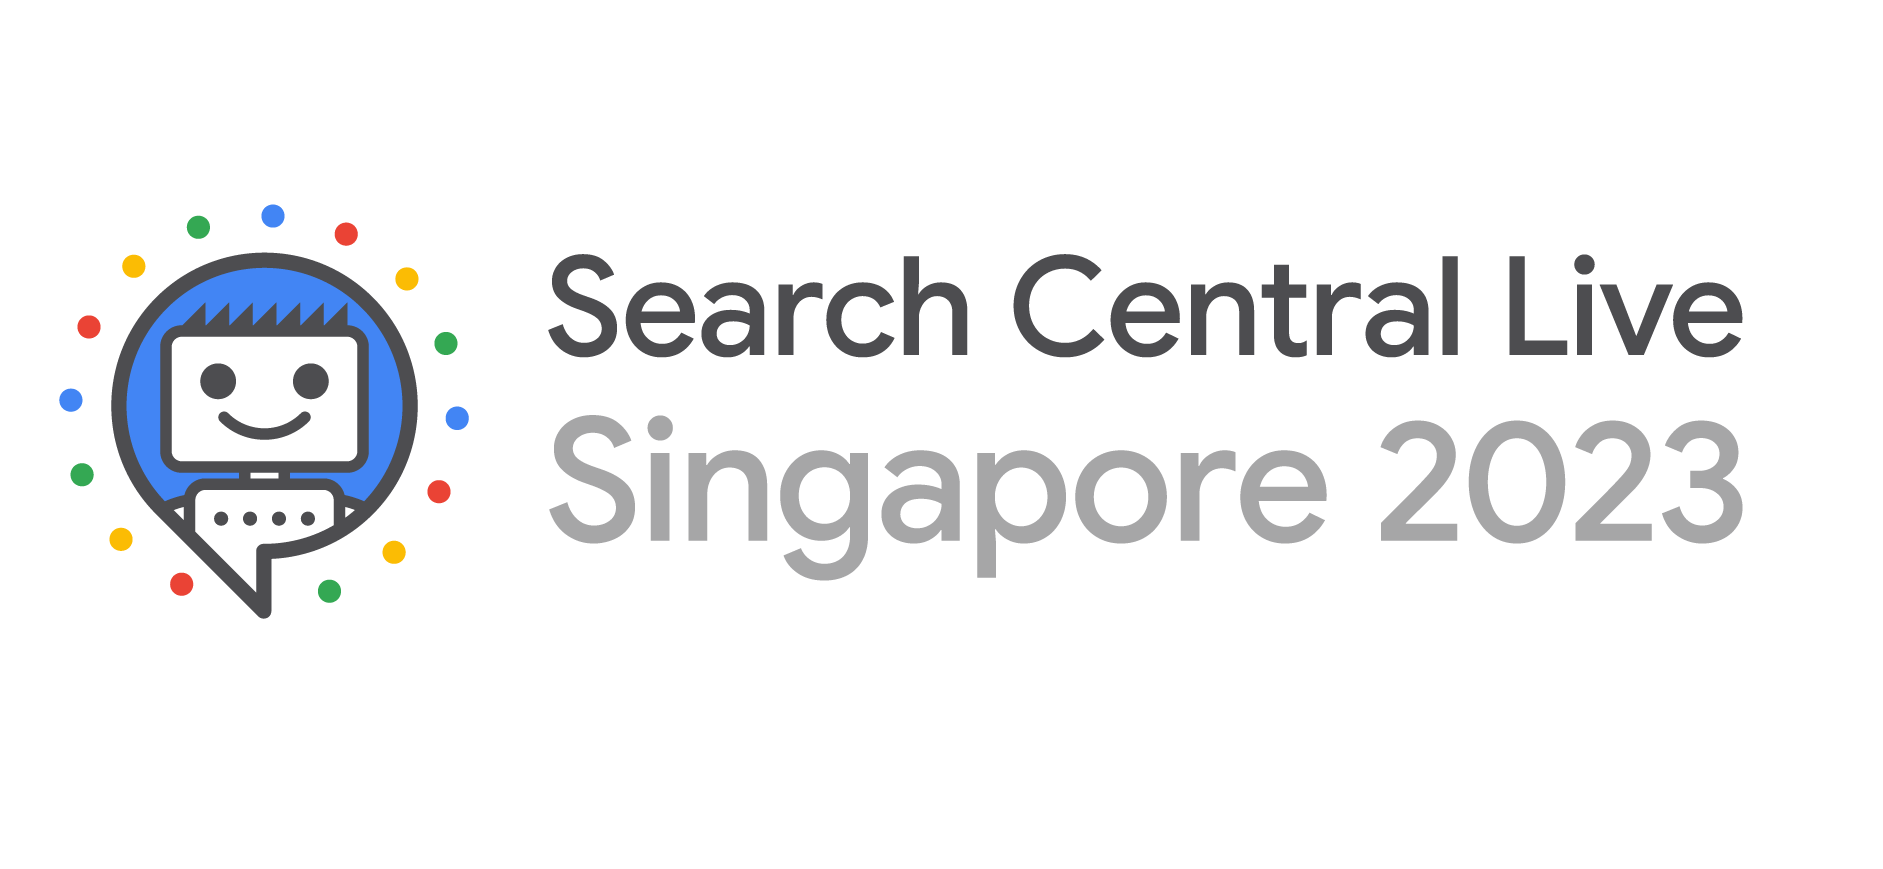 شعار فعالية Search Central Live في سنغافورة لعام 2023